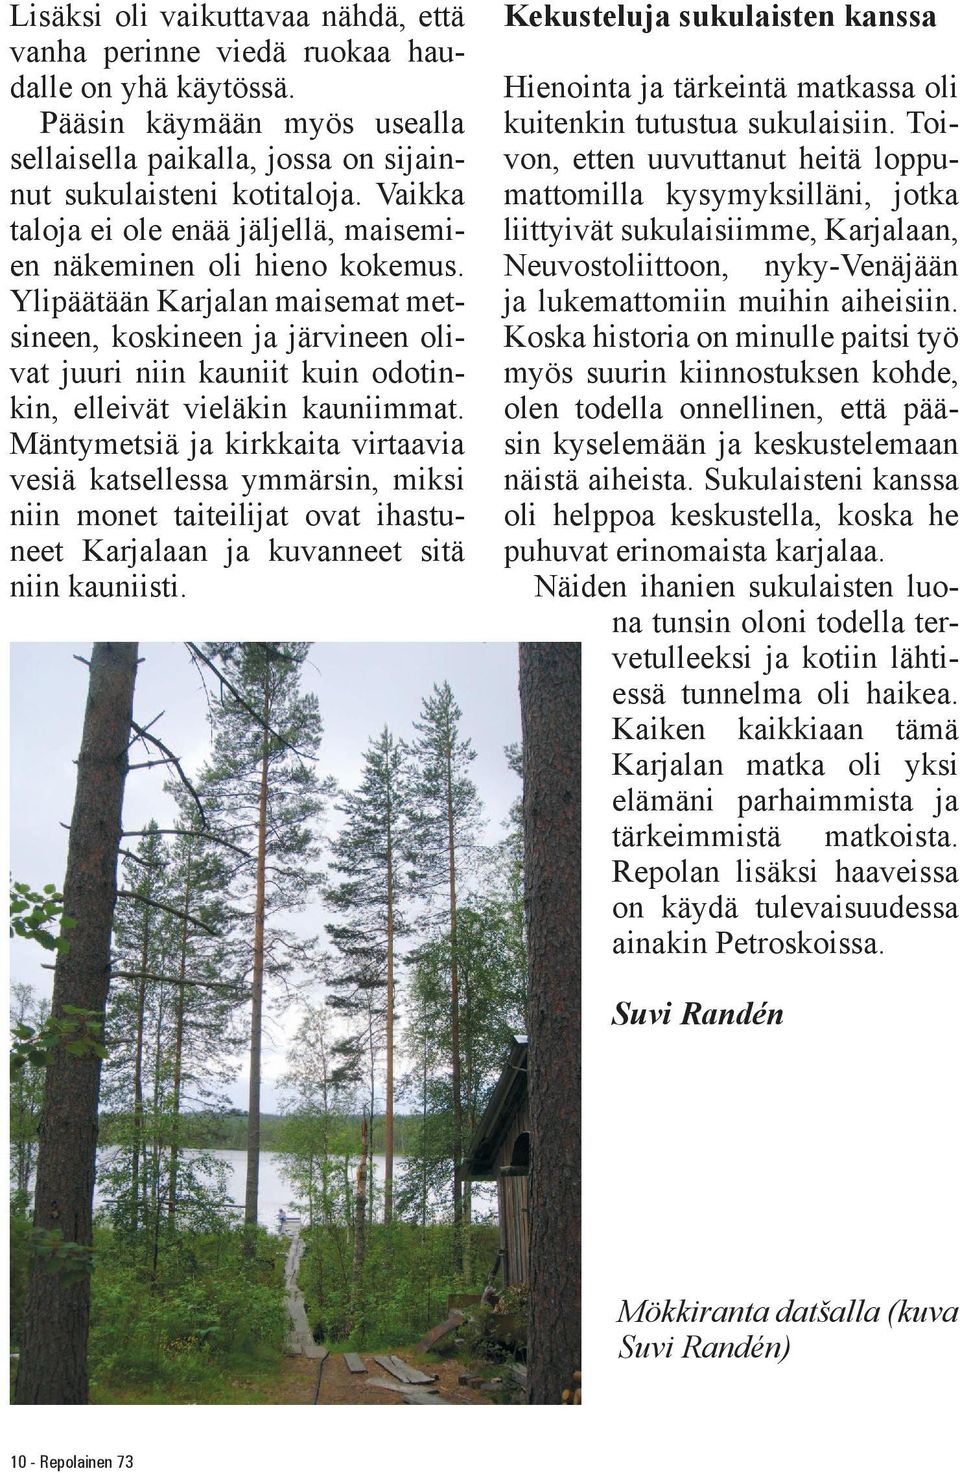 Ylipäätään Karjalan maisemat metsineen, koskineen ja järvineen olivat juuri niin kauniit kuin odotinkin, elleivät vieläkin kauniimmat.